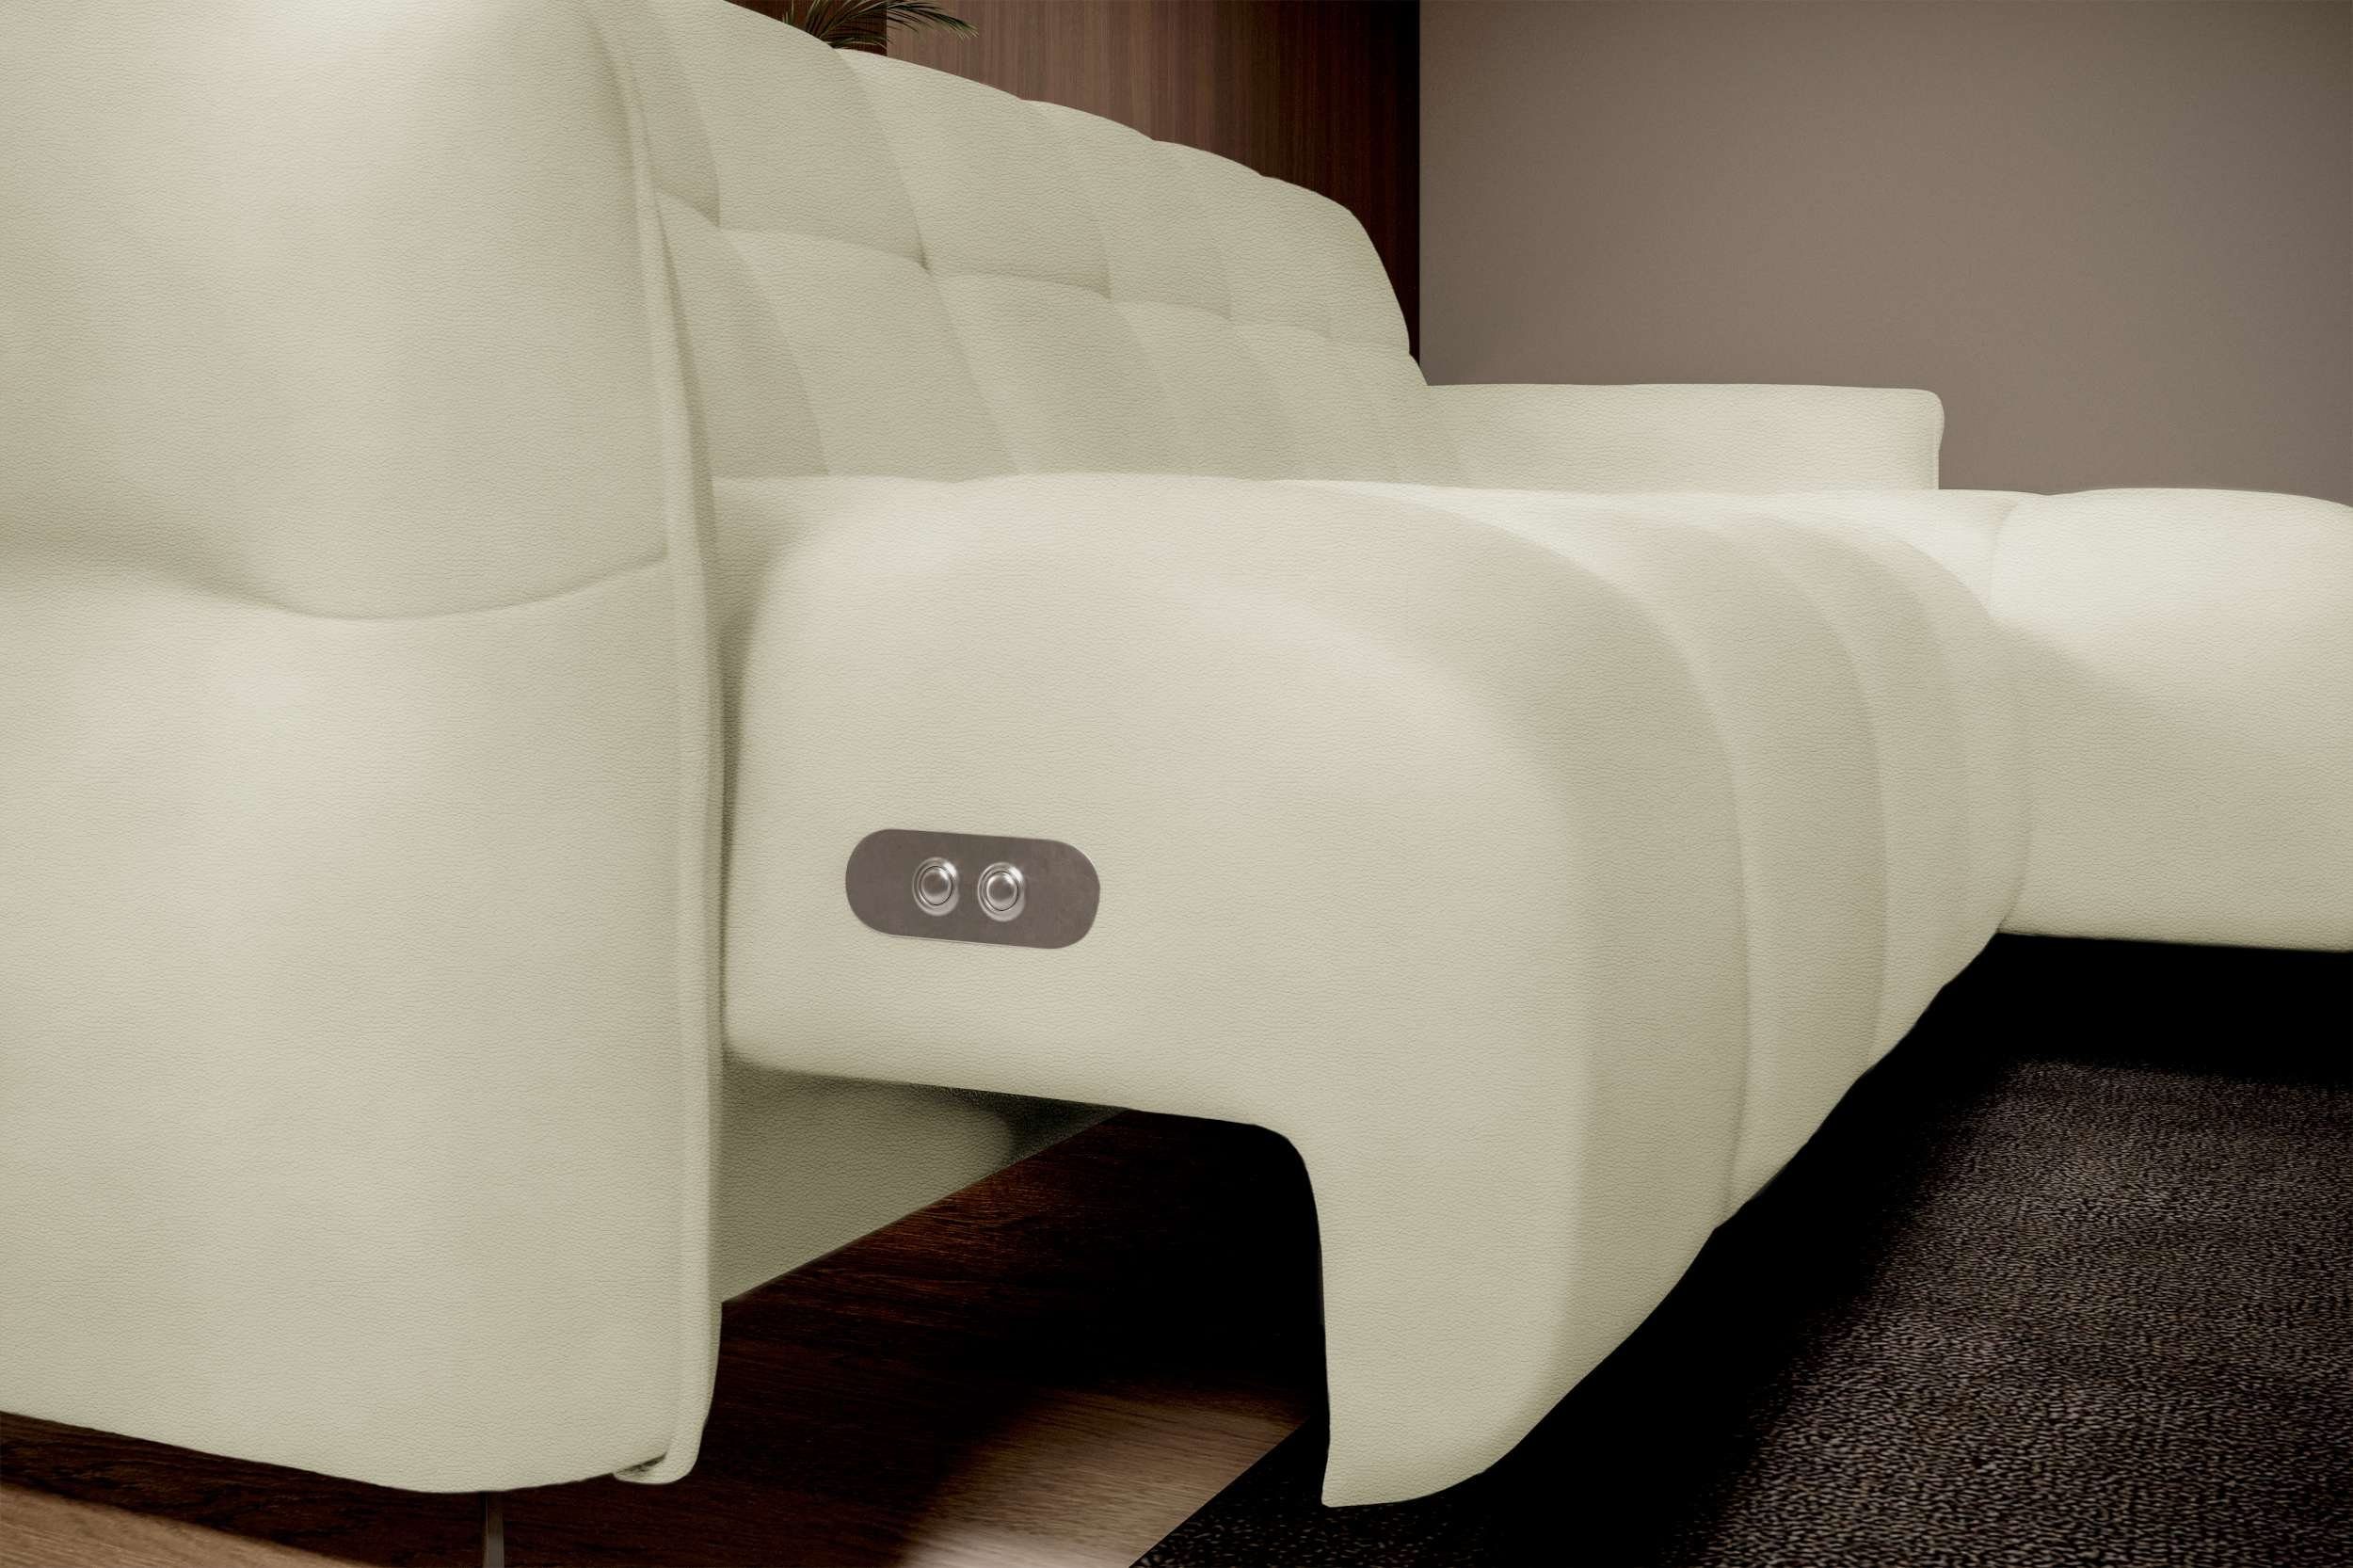 Bettfunktion, rechts inklusive Miliano, links wahlweise oder Stylefy Sitztiefenverstellung L-Form, bestellbar, mane Eckcouch, mit Ecksofa